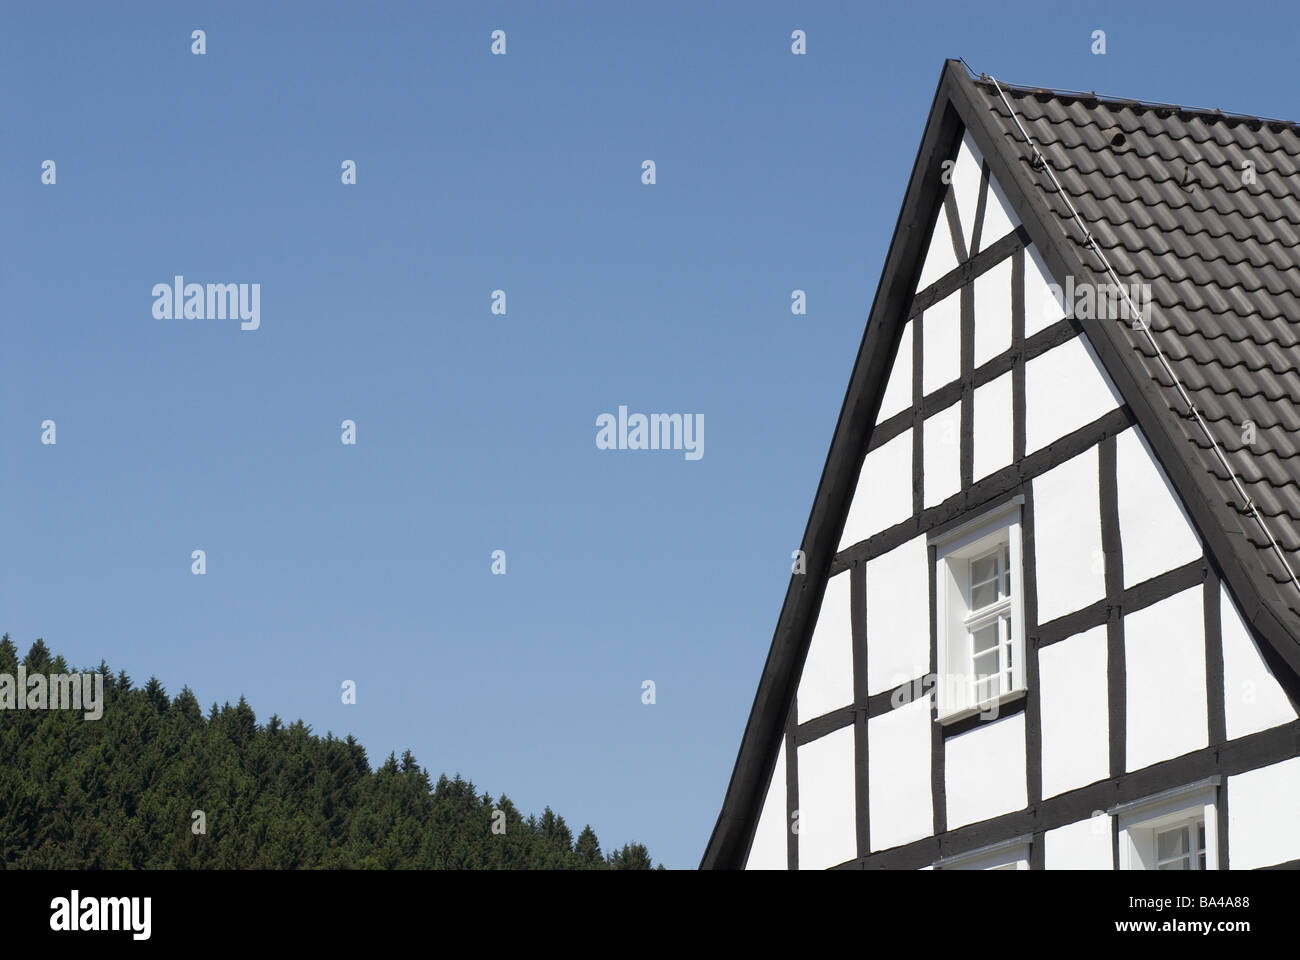 Colombages-chambre détail rung windows windows-tuiles de toit ciel arbres forestiers Bergisches pays au nord de l'Allemagne Banque D'Images